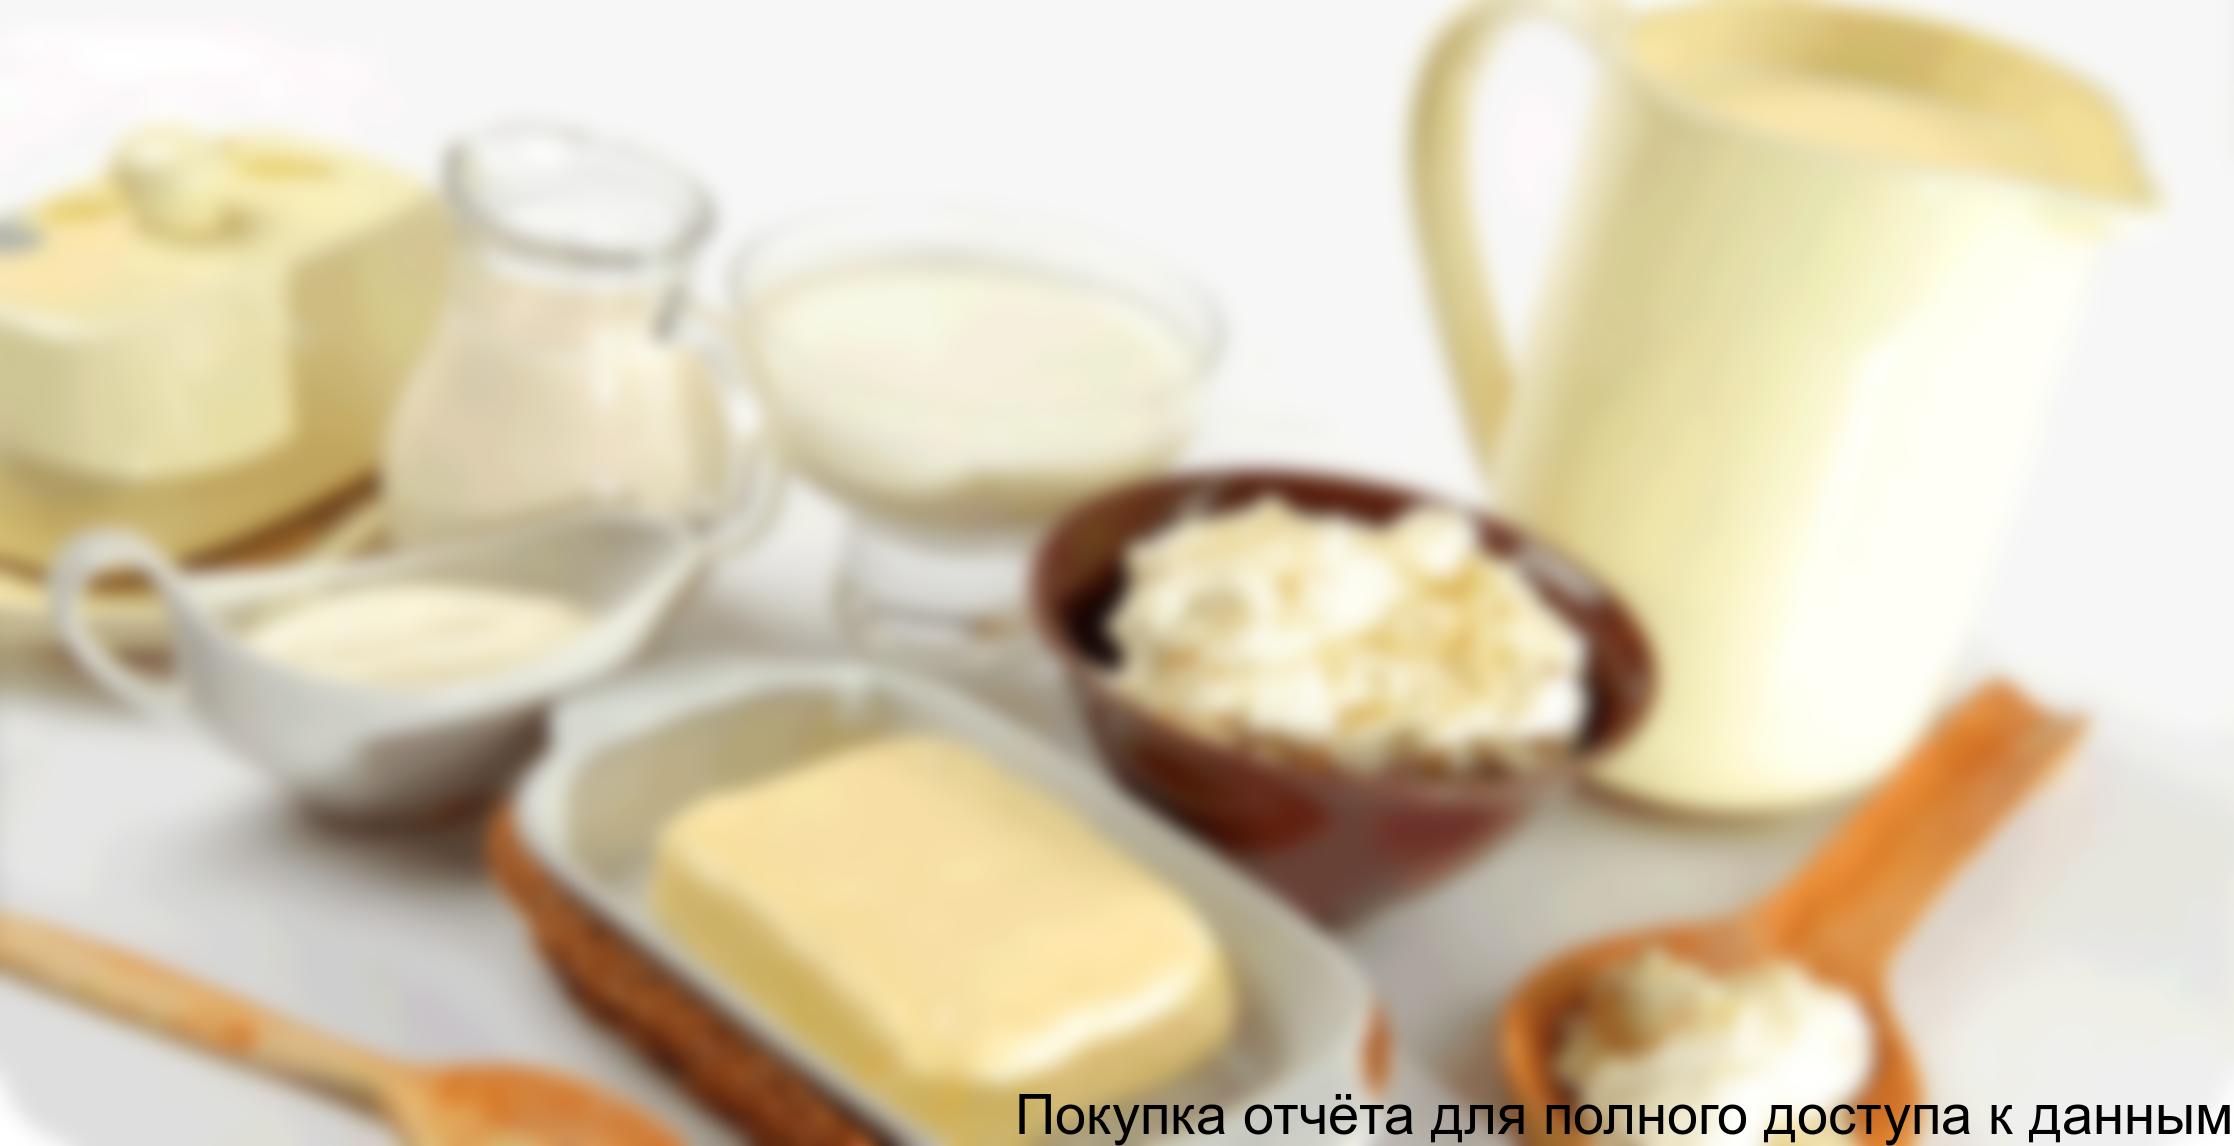 Отраслевой обзор рынка молочной продукции в Кабардино-Балкарской республике